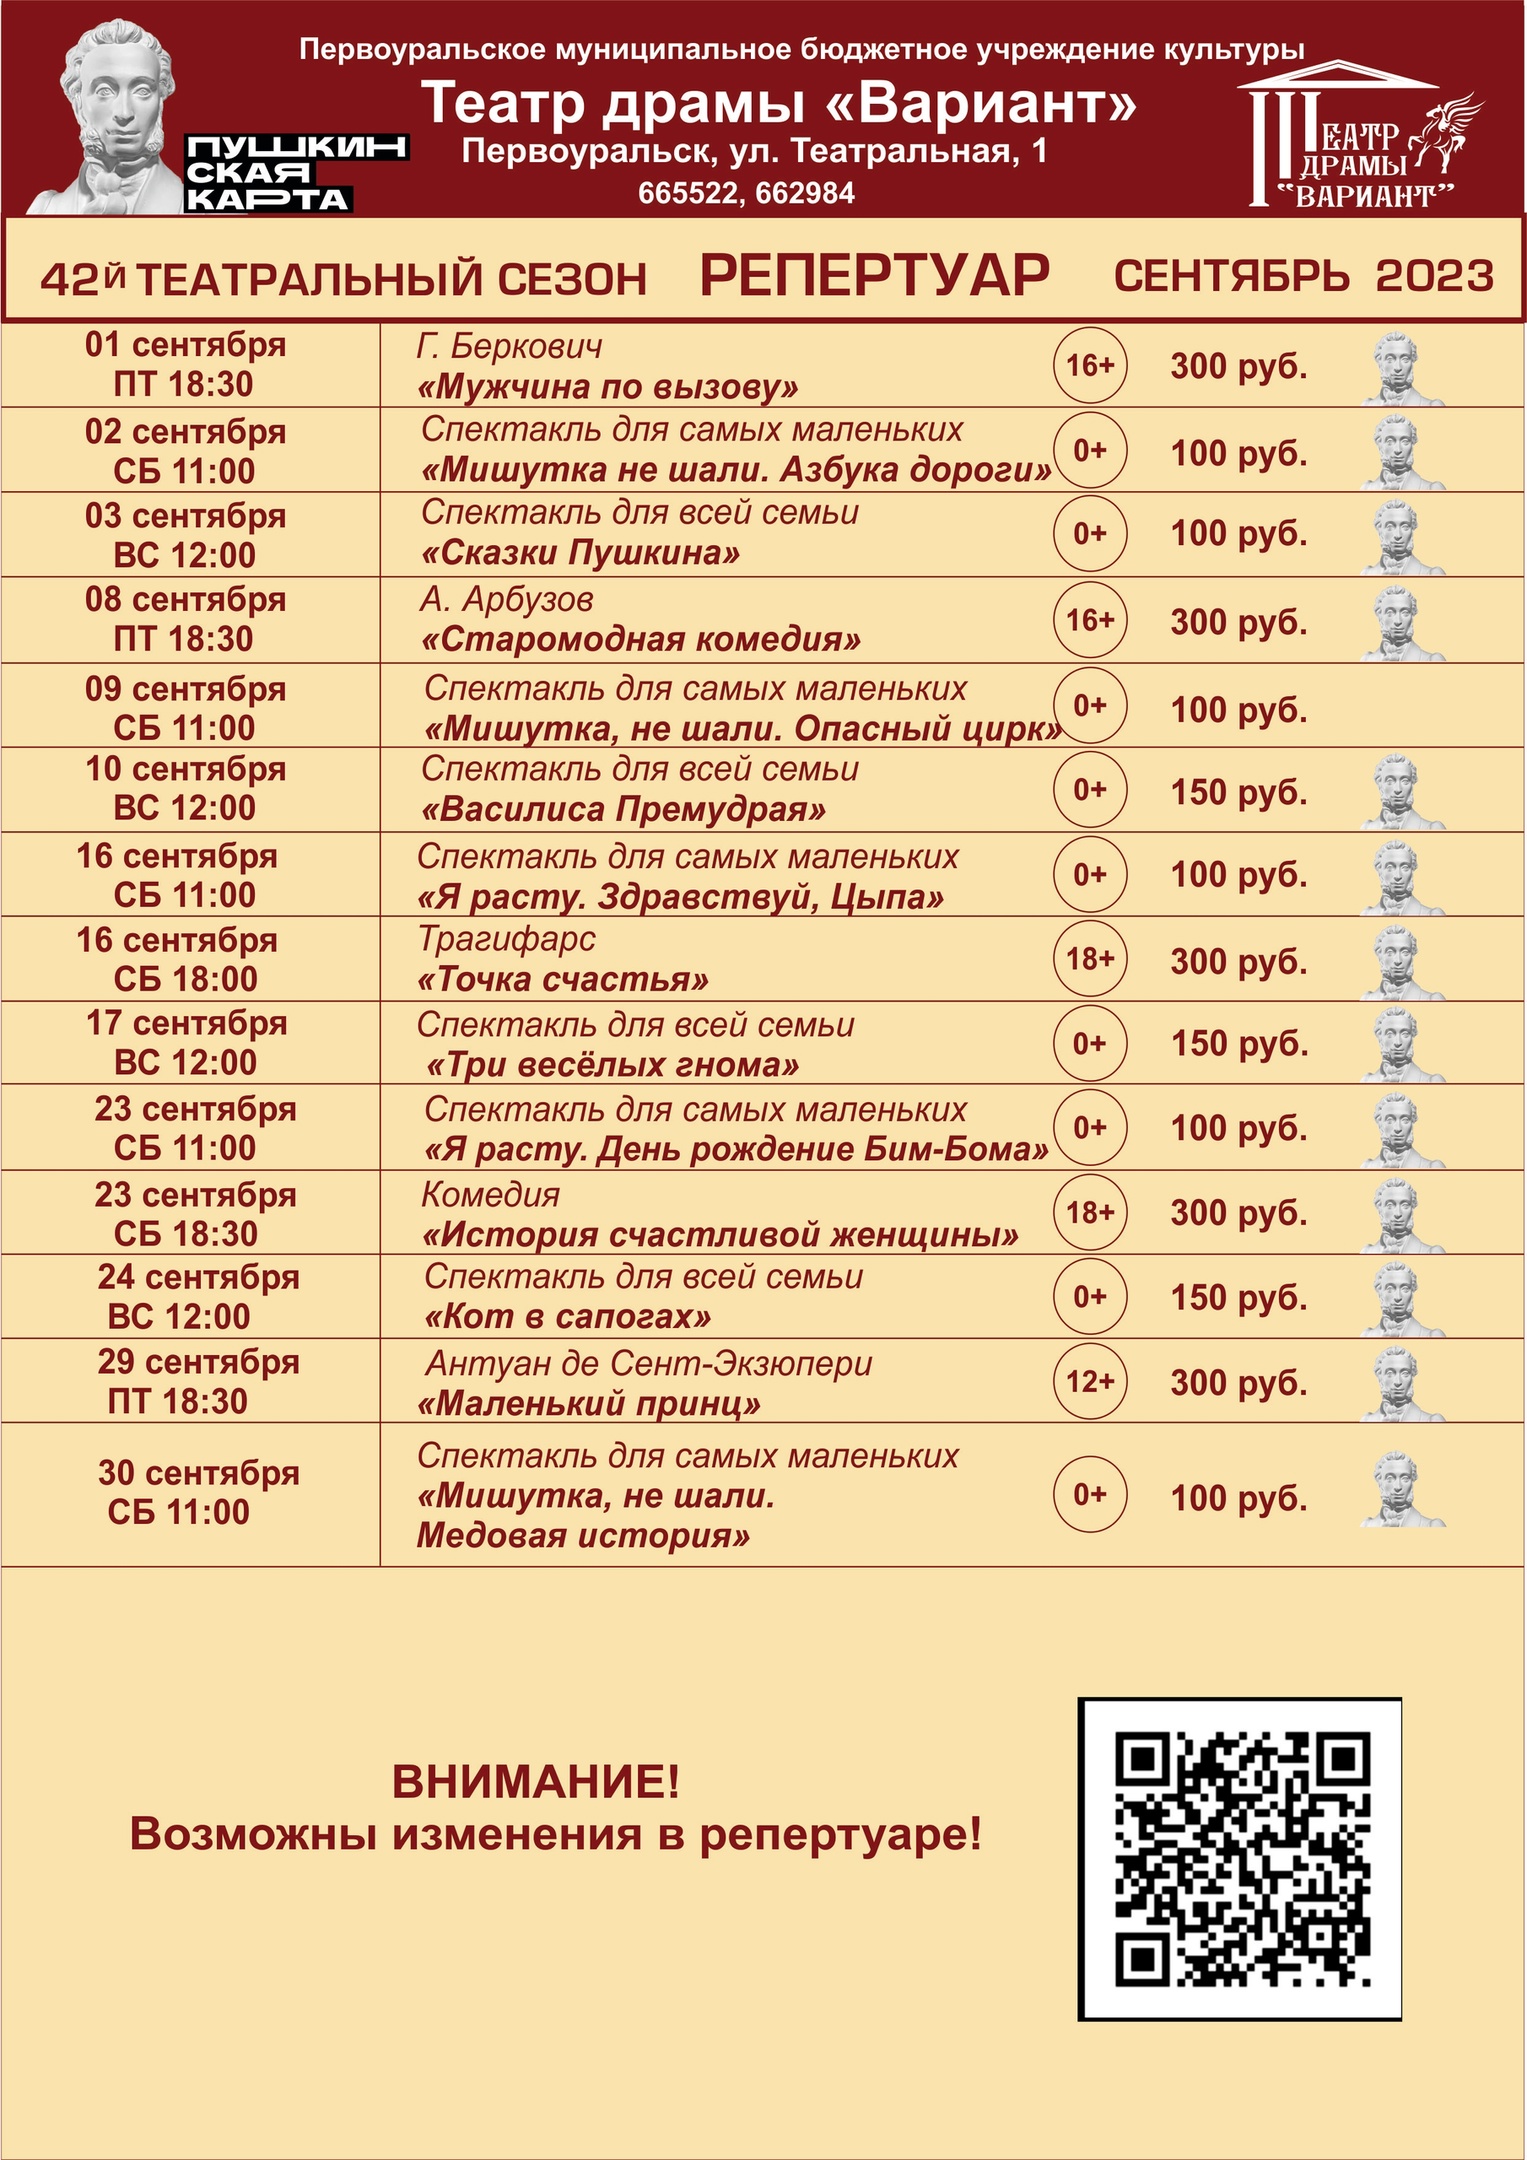 Репертуар театра драмы «Вариант» на сентябрь-октябрь 2023 года